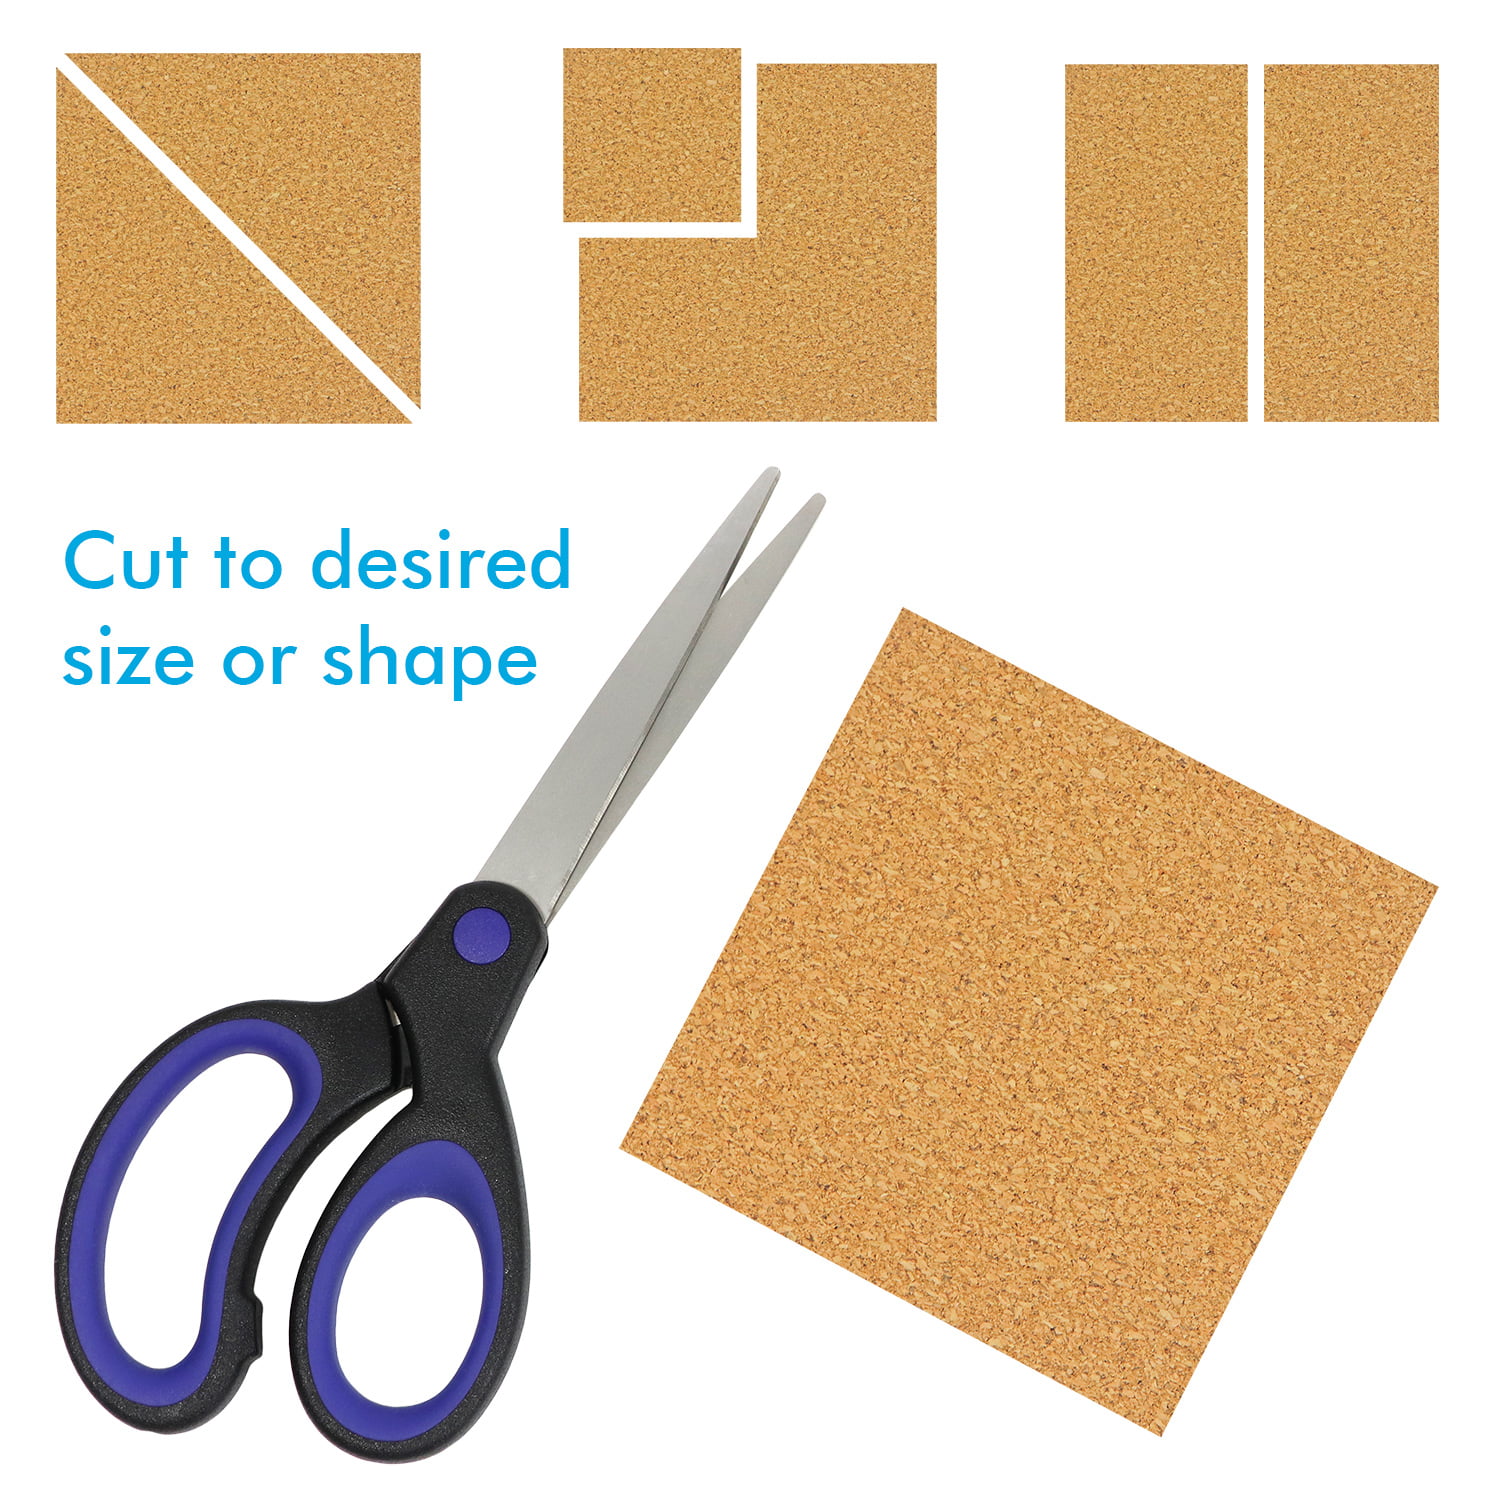 Zhongtai 100Pcs Self-Adhesive Cork Squares Cork Adhesive Sheets 4x4inch for  Coasters and DIY Crafts, Cork Board Squares Cork Backing Sheets Mini Wall Cork  Tiles Mat 